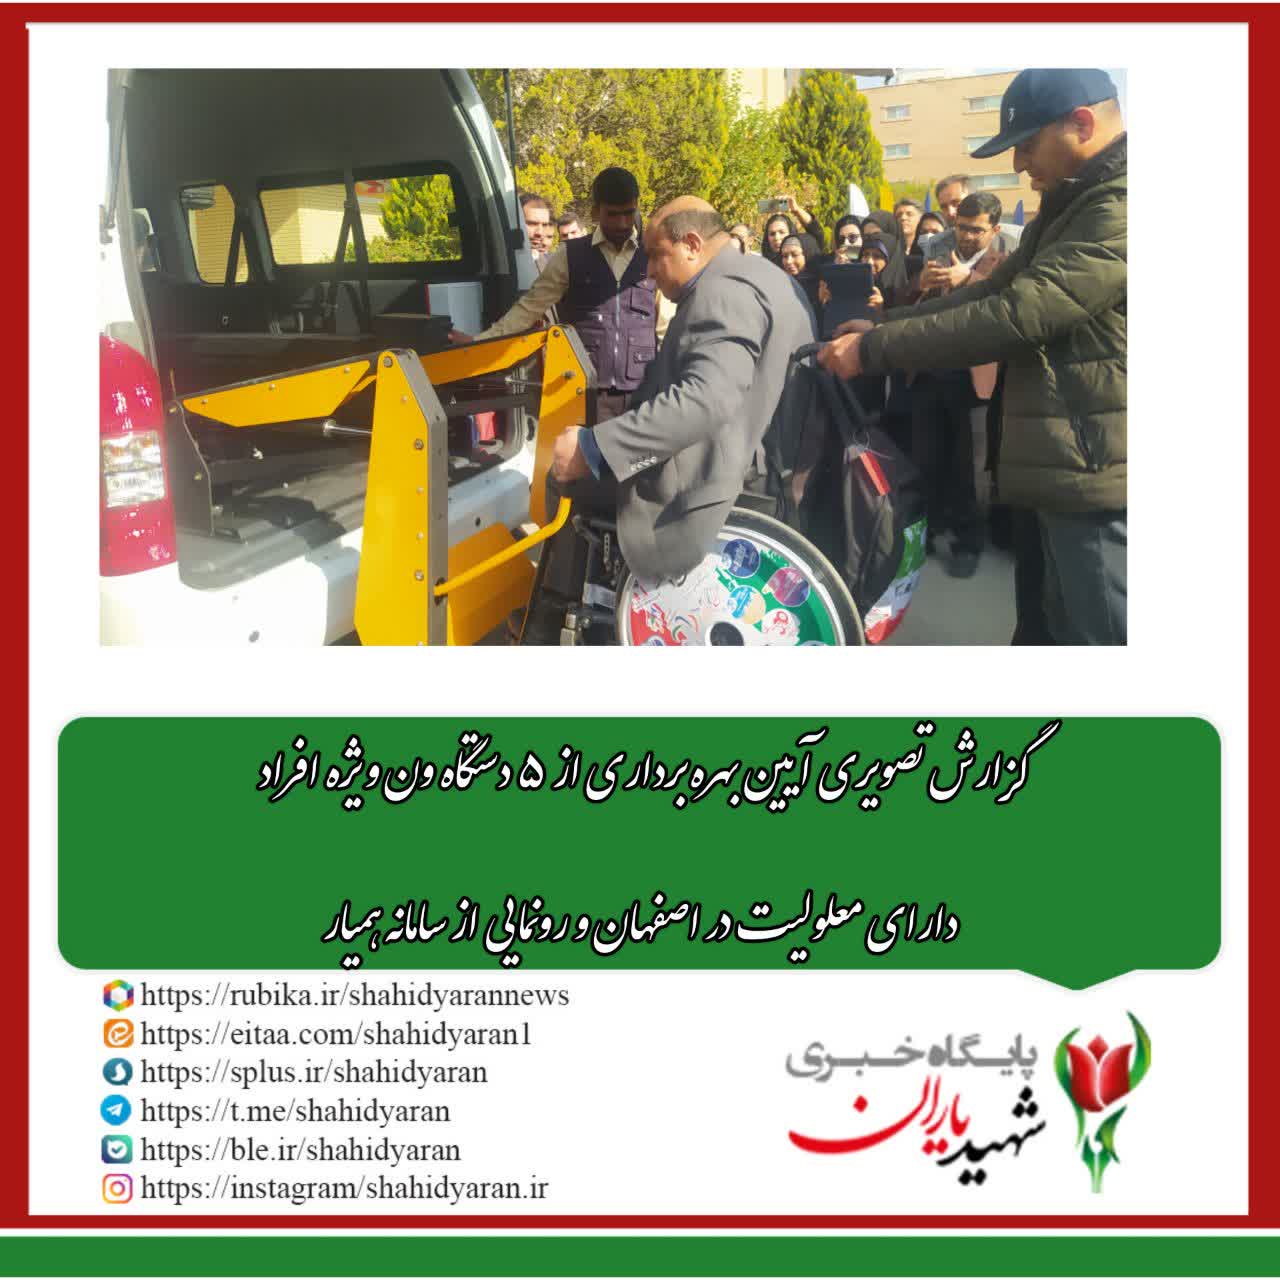 گزارش تصویری آیین بهره برداری از ۵ دستگاه ویژه افراد دارای معلولیت در اصفهان و رونمایی از سامانه همیار: